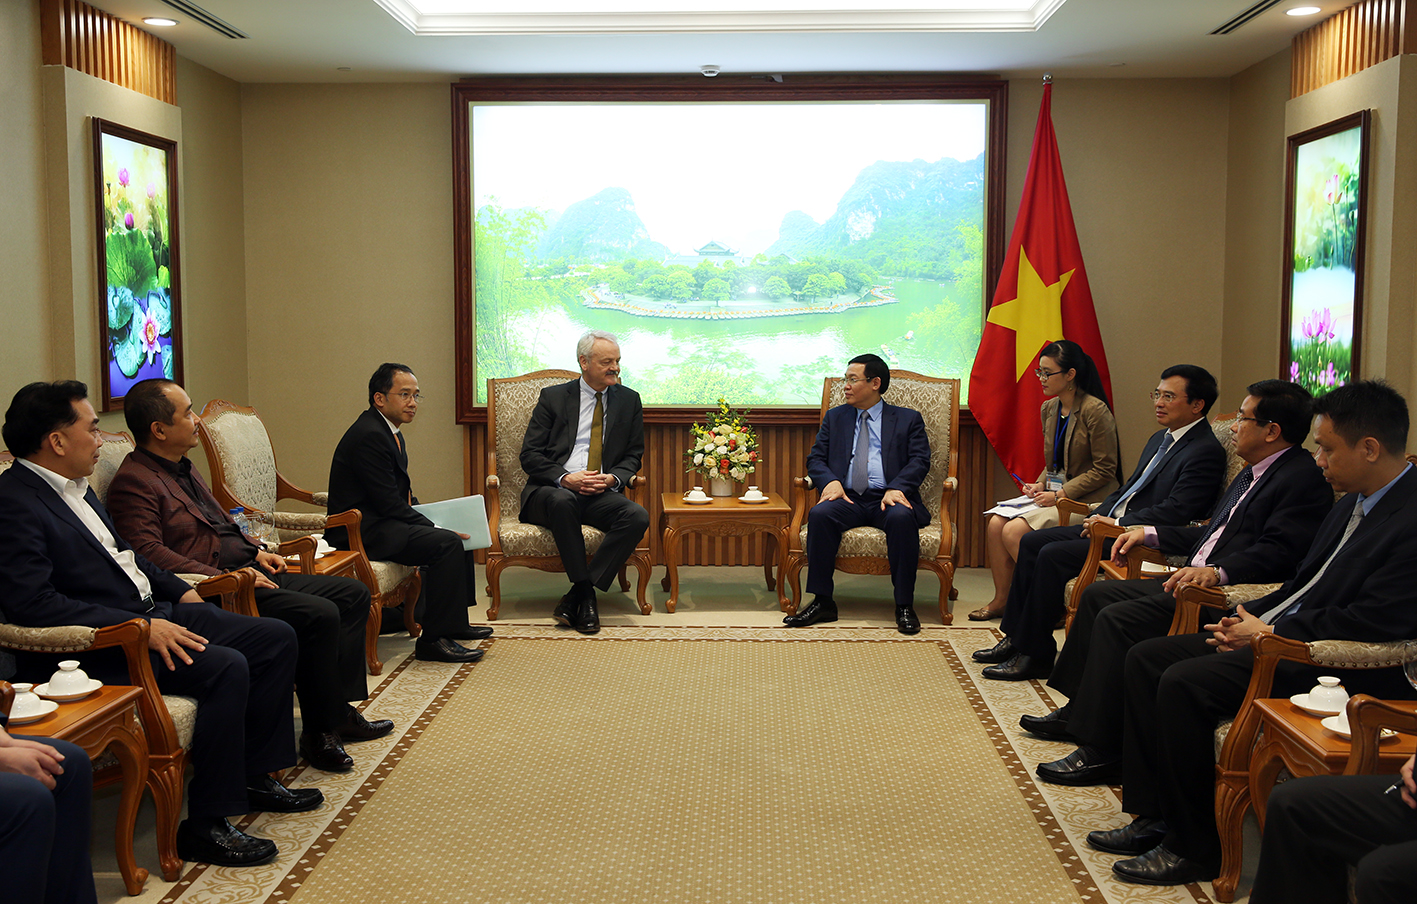 Phó Thủ tướng Vương Đình Huệ tiếp ông Christian Hinch, Phó Chủ tịch Tập đoàn TalanxAG và Chủ tịch HDI Global SE